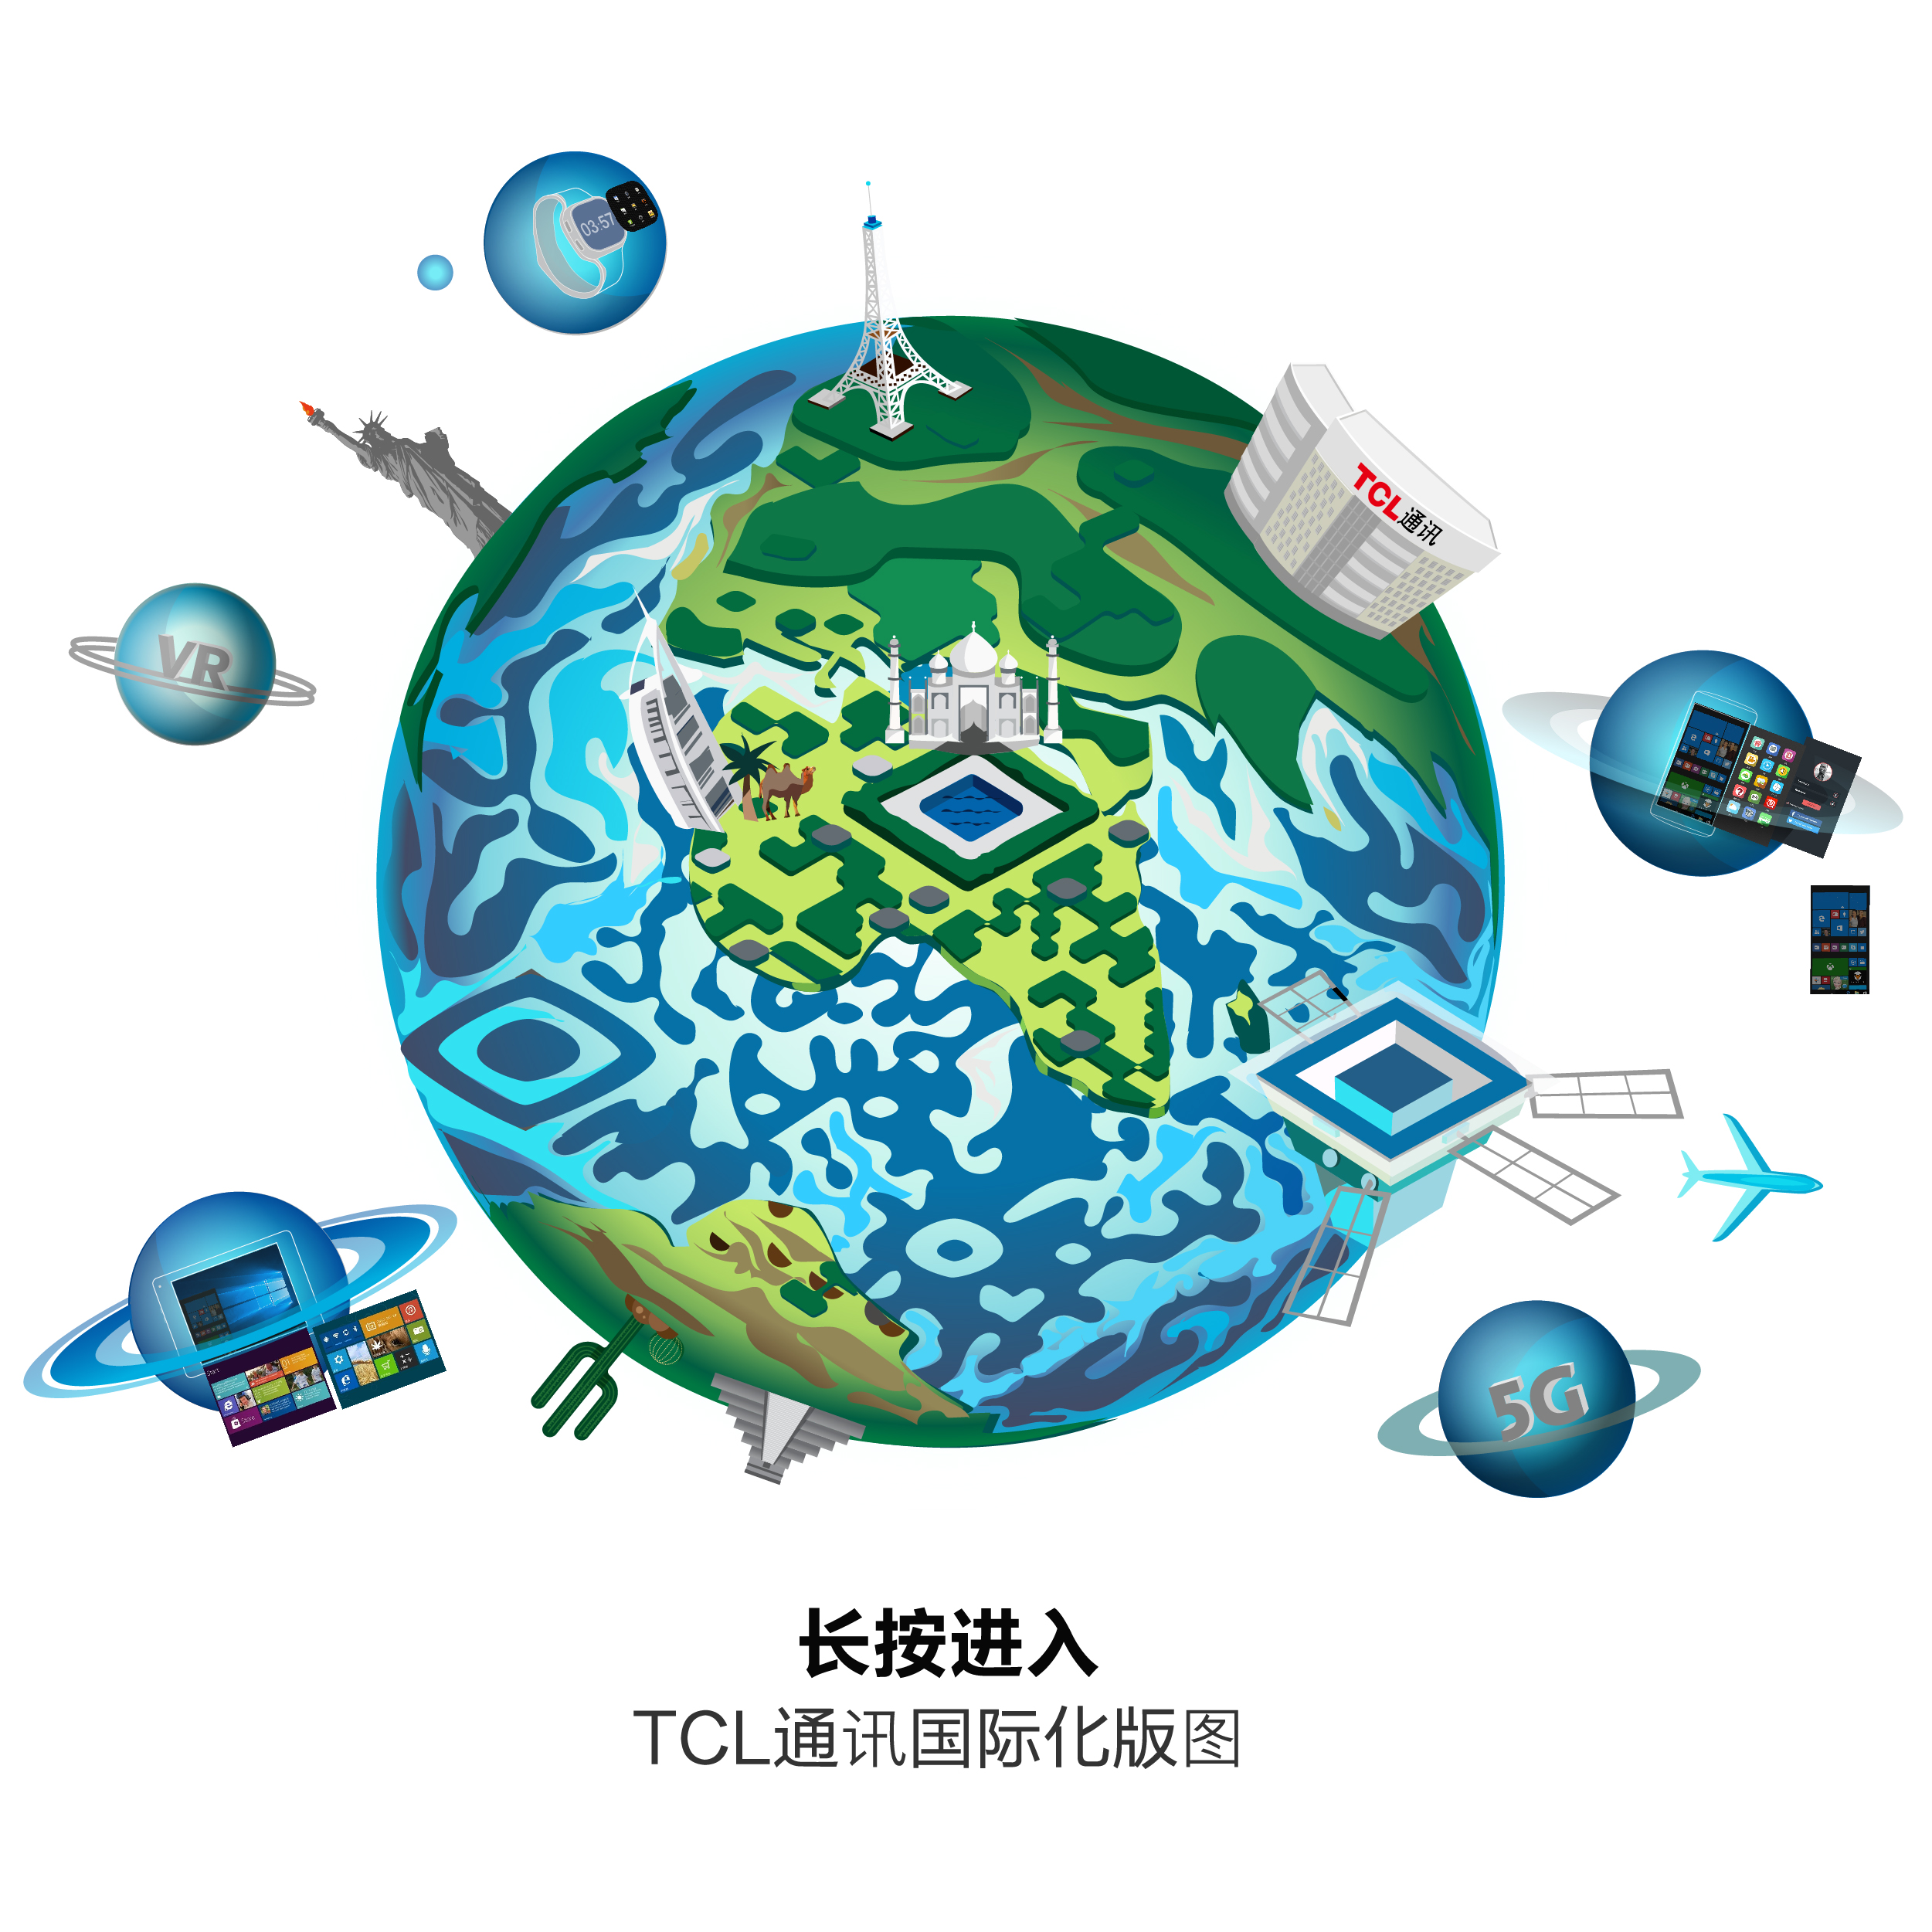 TCL通讯立体静态艺术二维码-创意二维码-第九工场设计外包